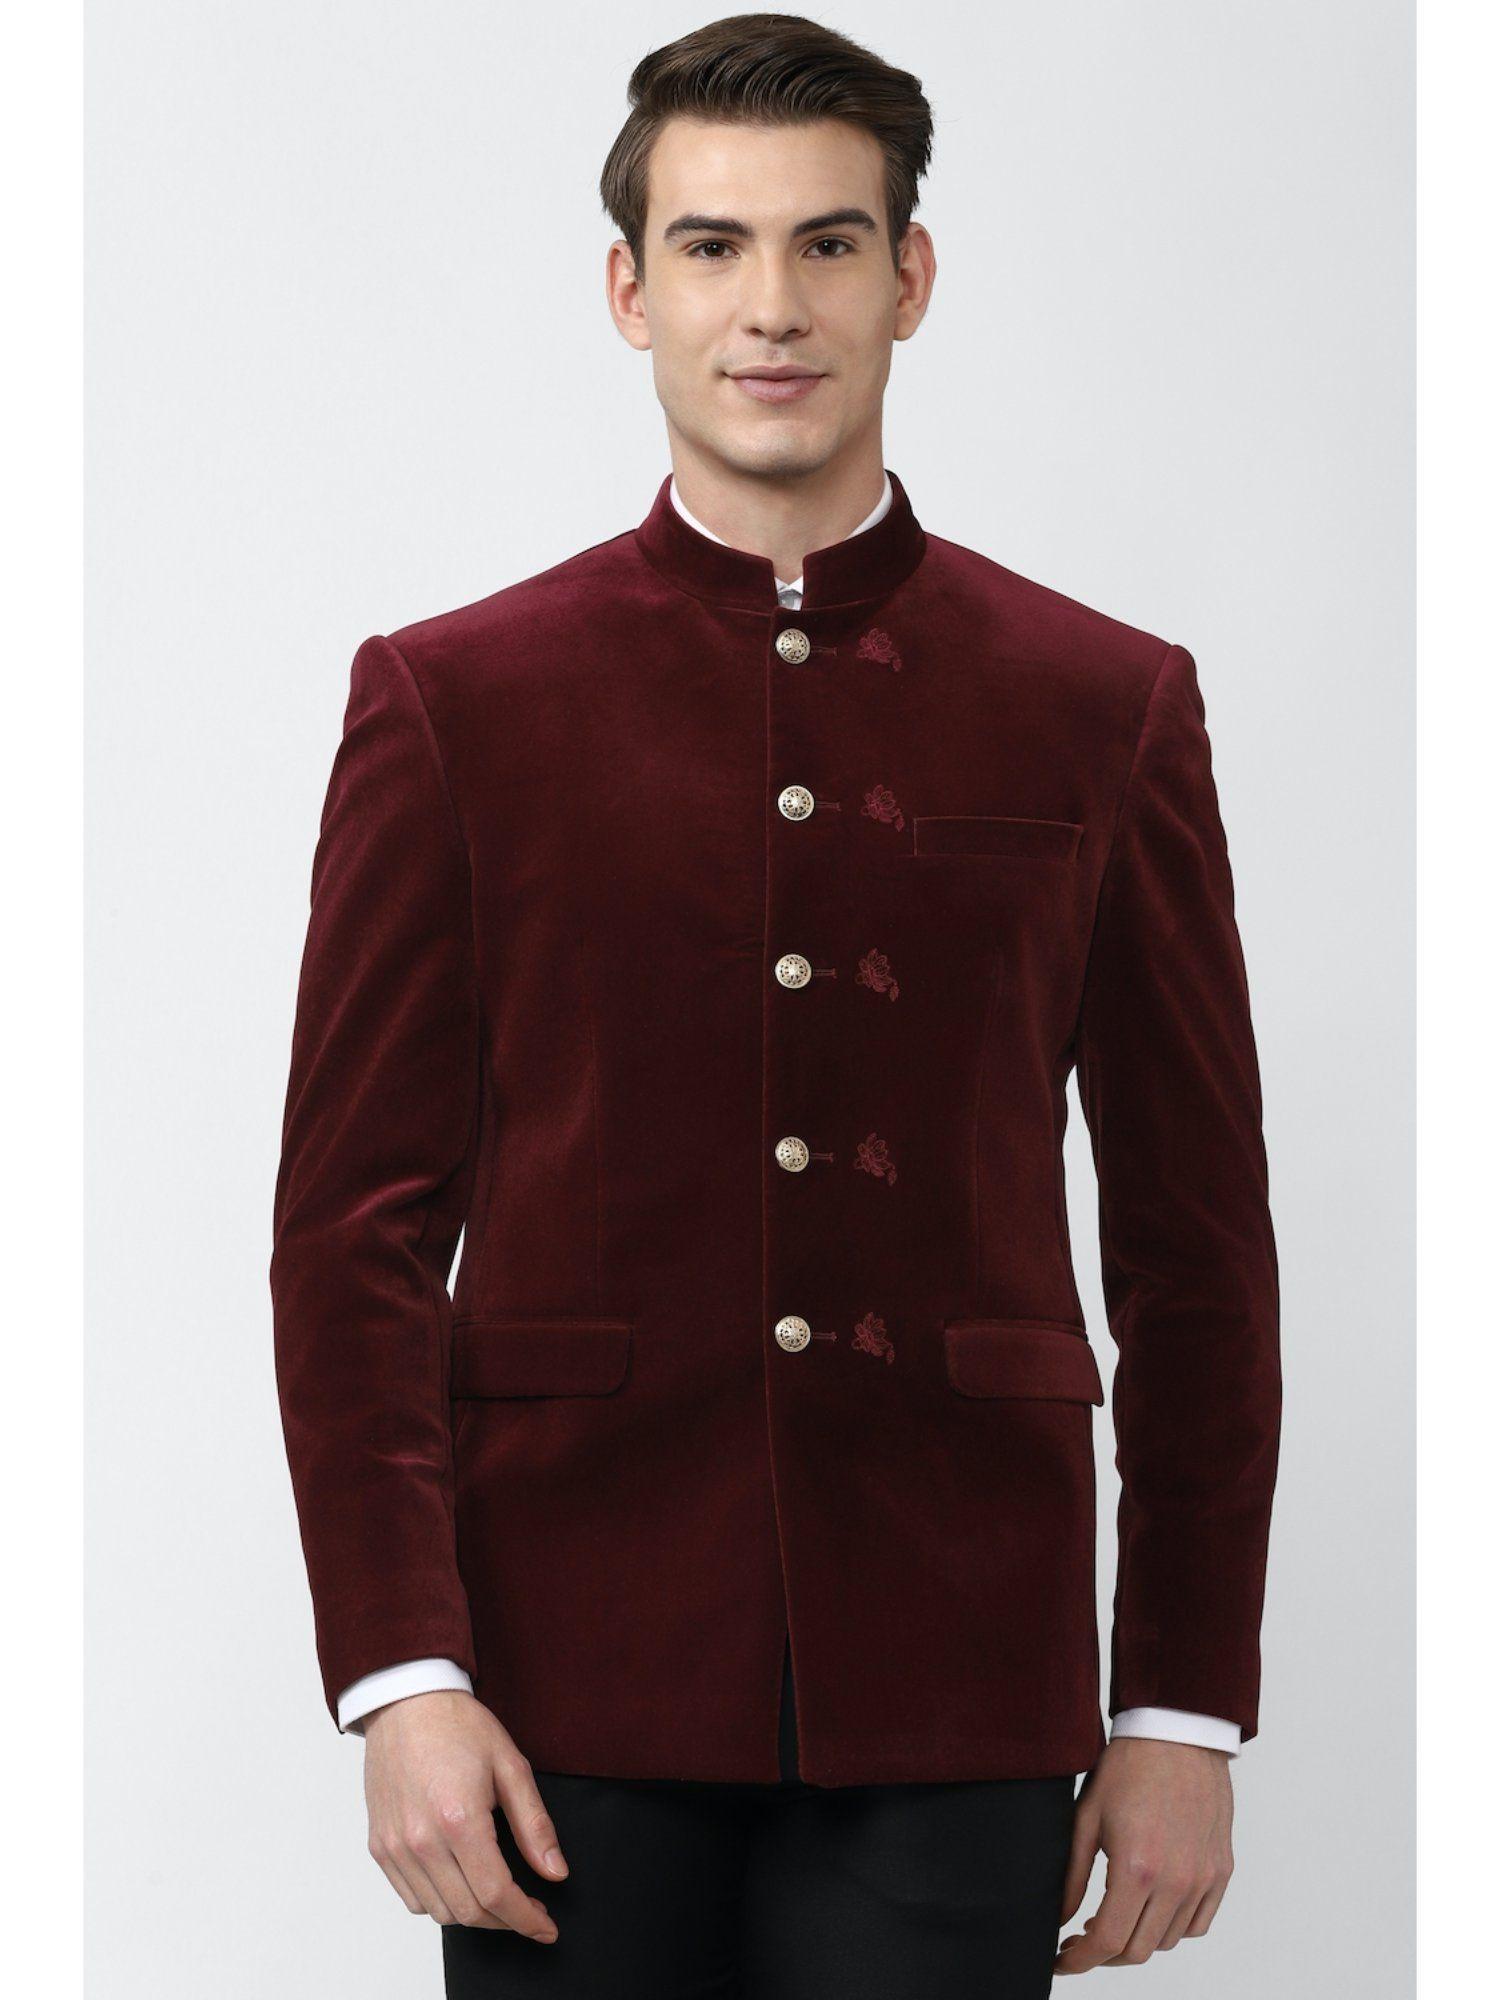 men embroidered maroon blazer